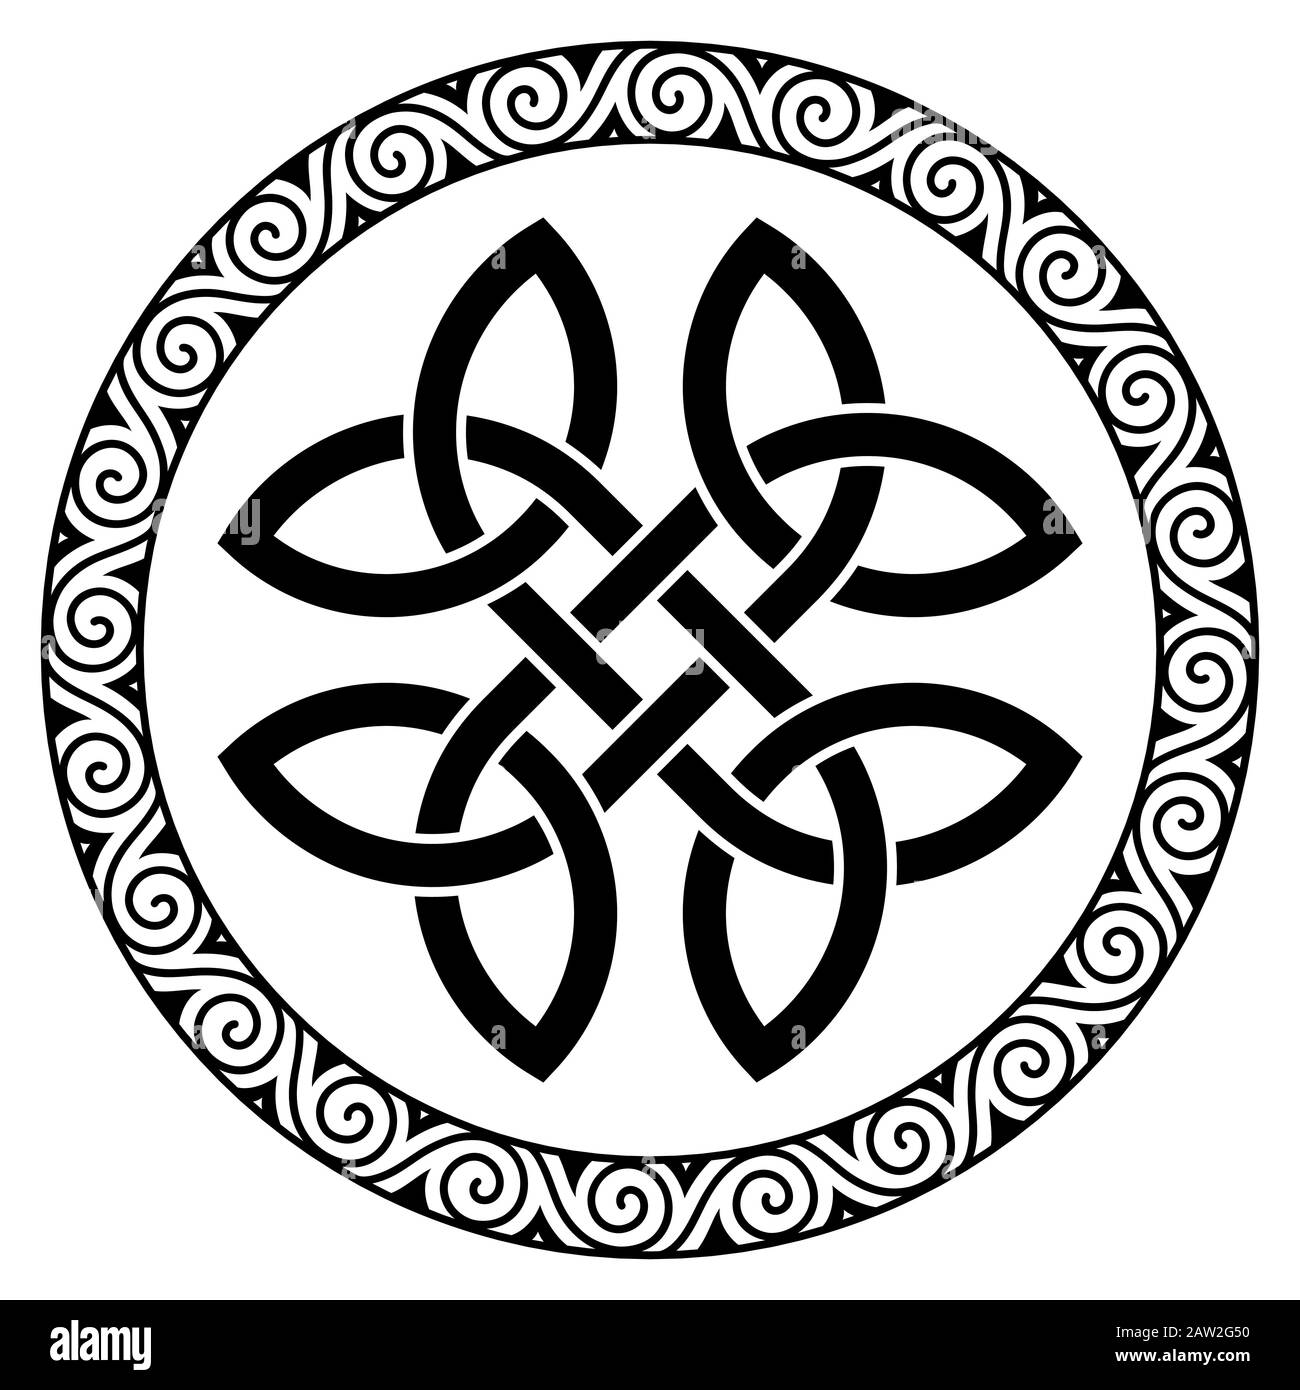 Antico Design Celtico Rotondo. Nodo celtico, mandala Illustrazione Vettoriale